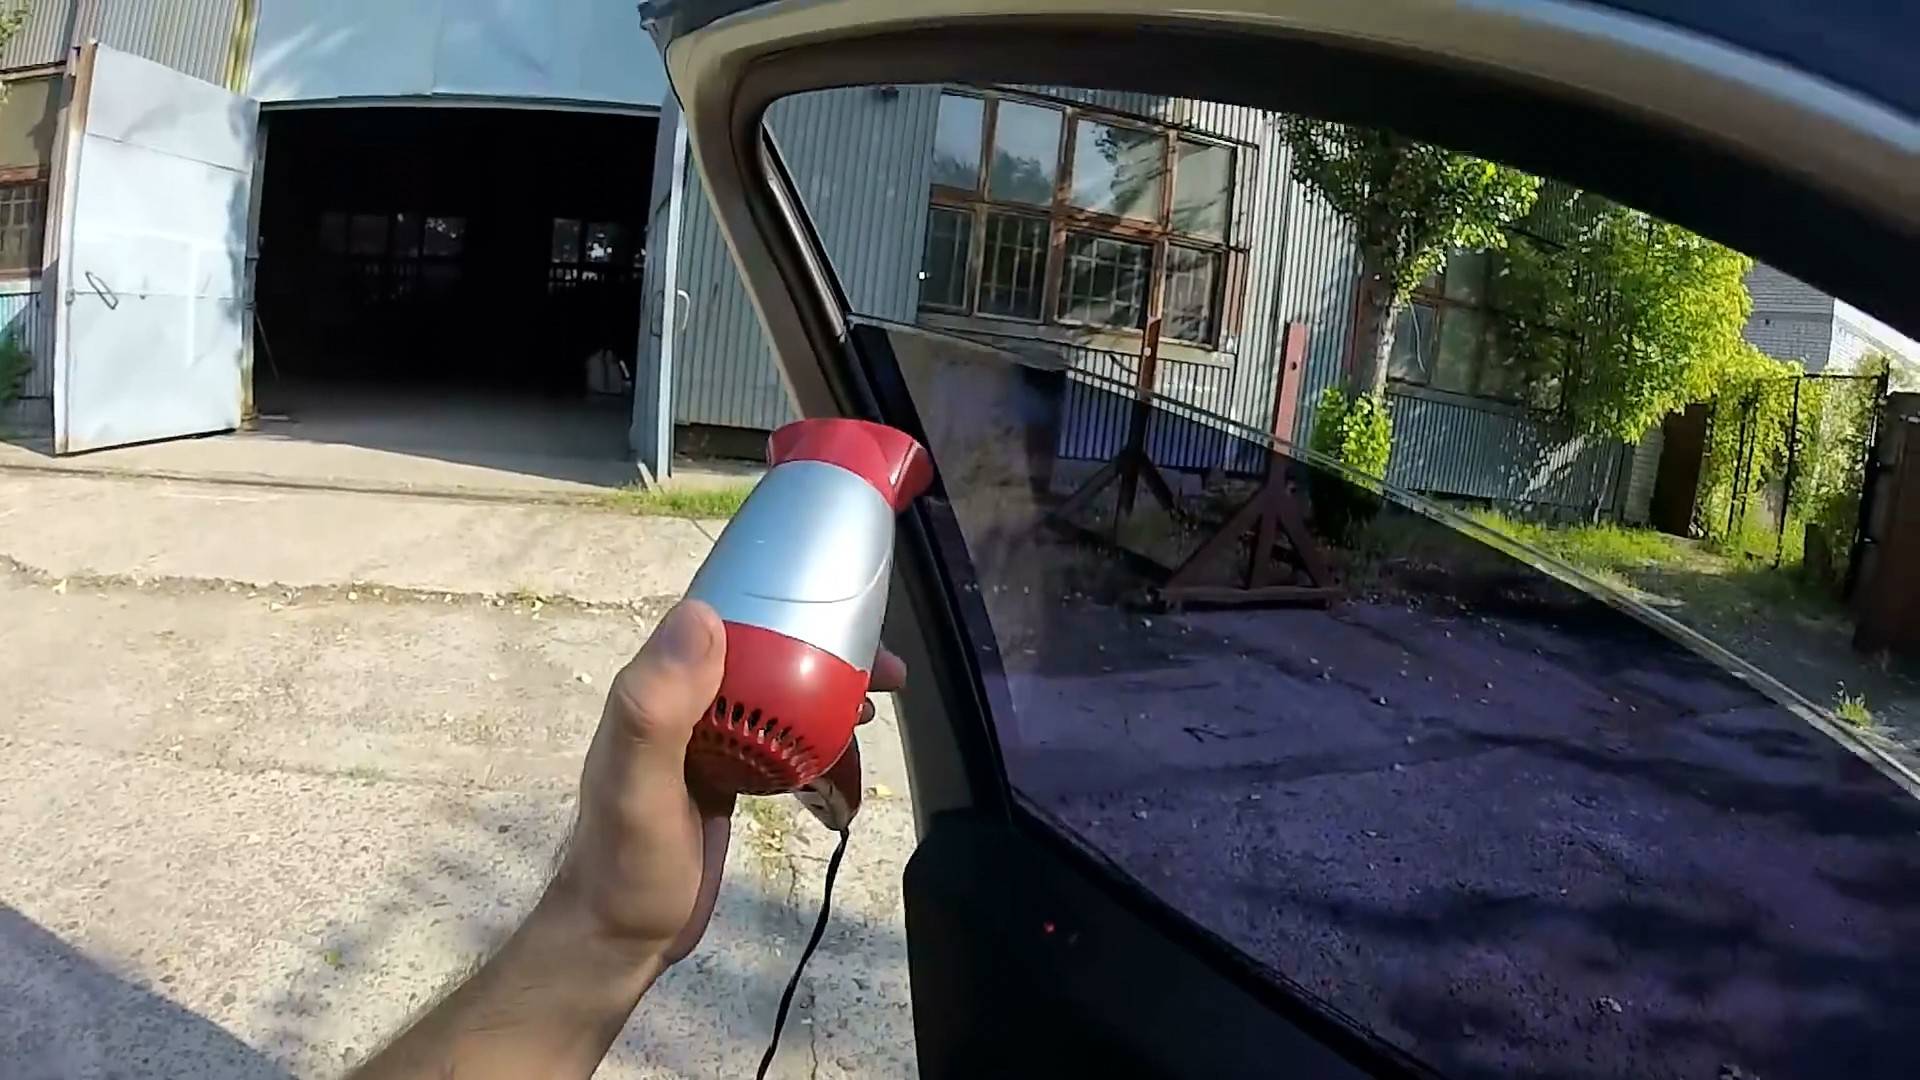 Снятие тонировки со стекол автомобиля своими руками